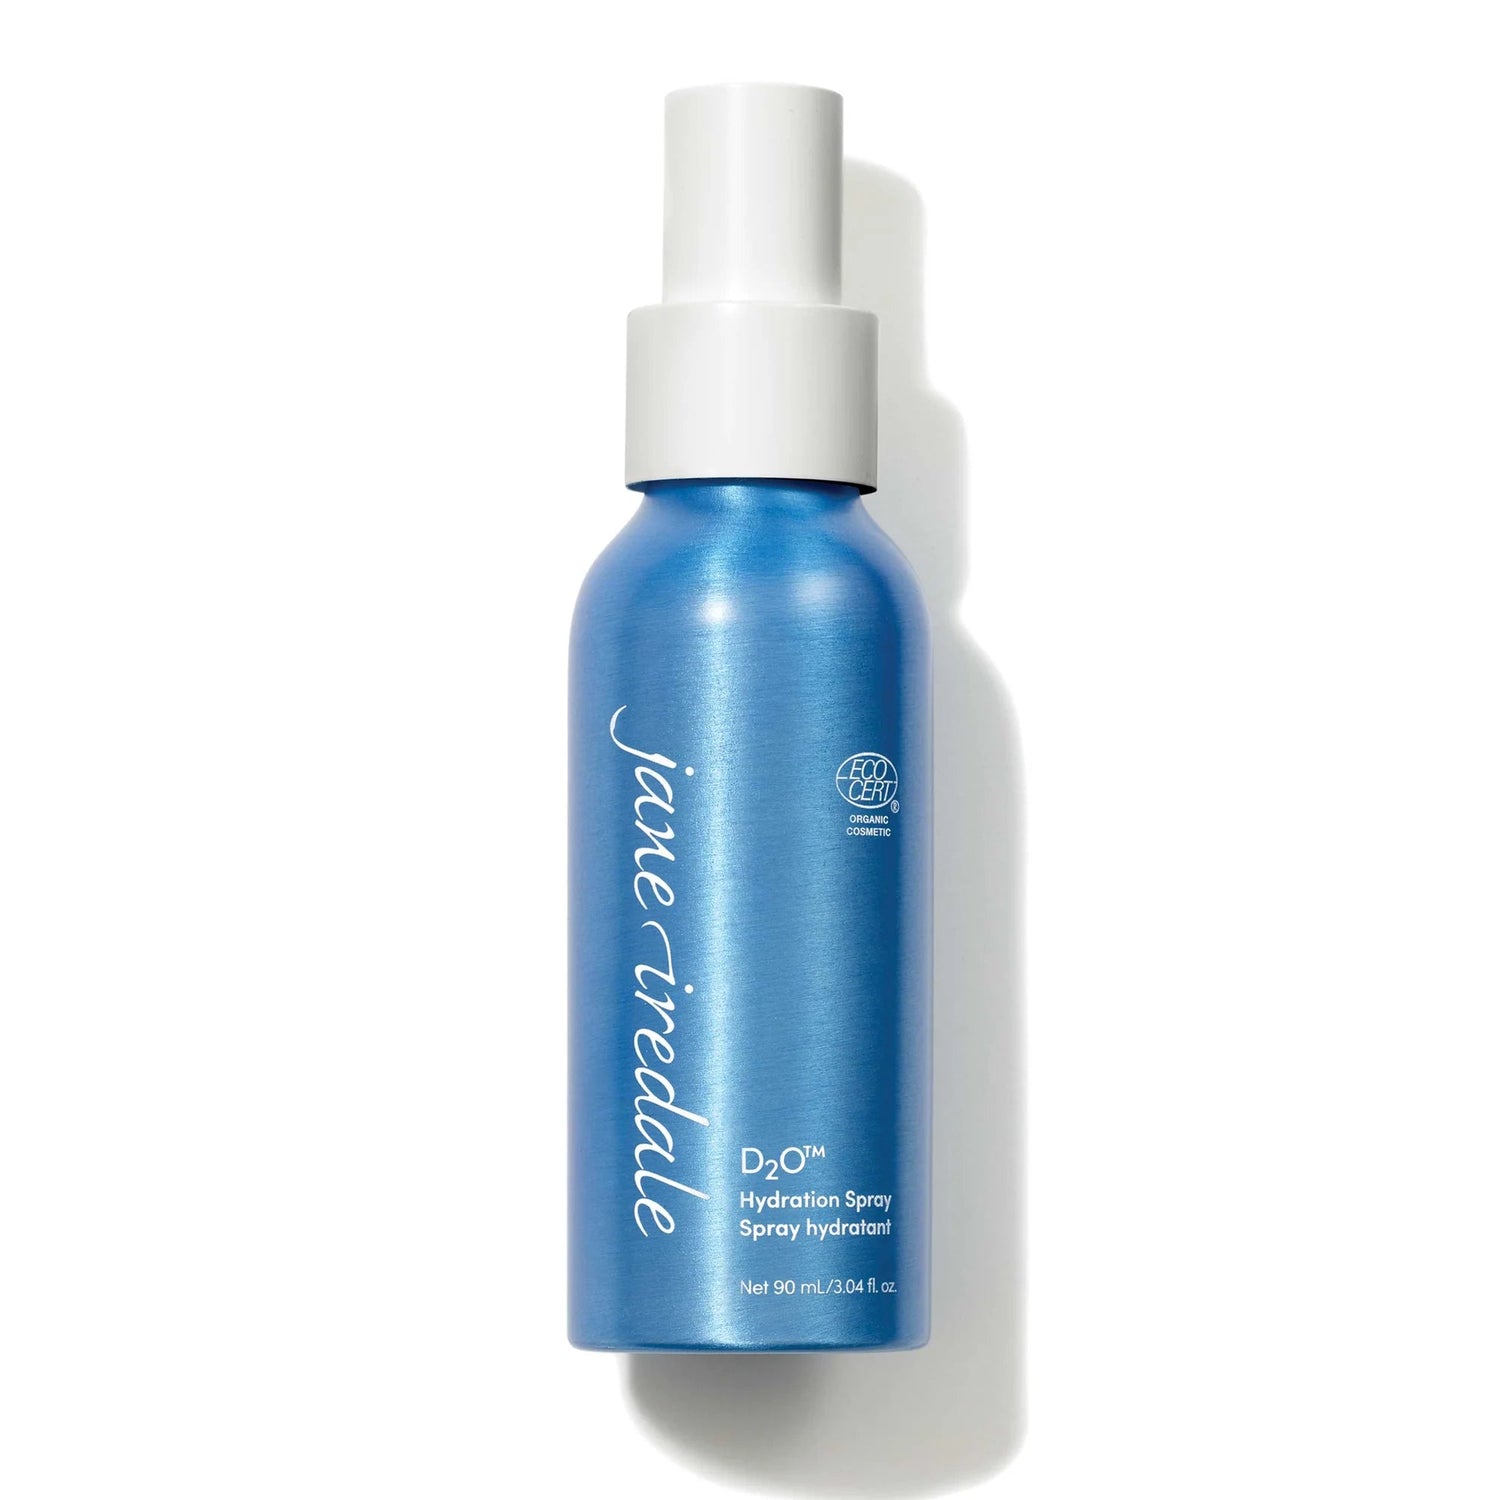 D₂O™ Hydration Spray - Pearl Skin Studio